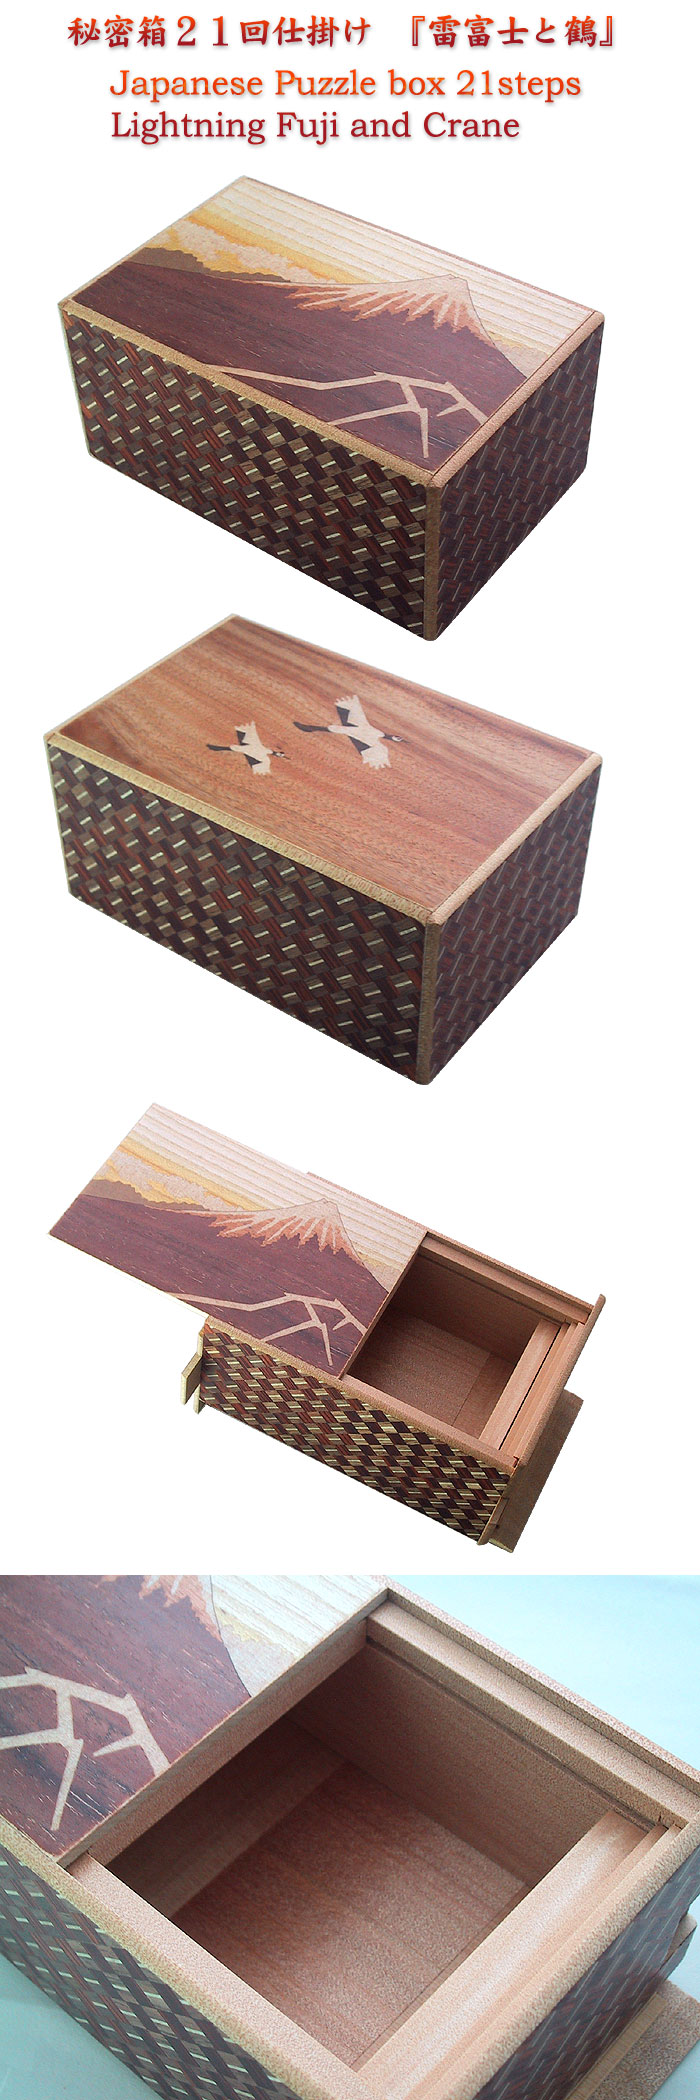 Japanese Puzzle box 21steps Lightning Fuji and Crane